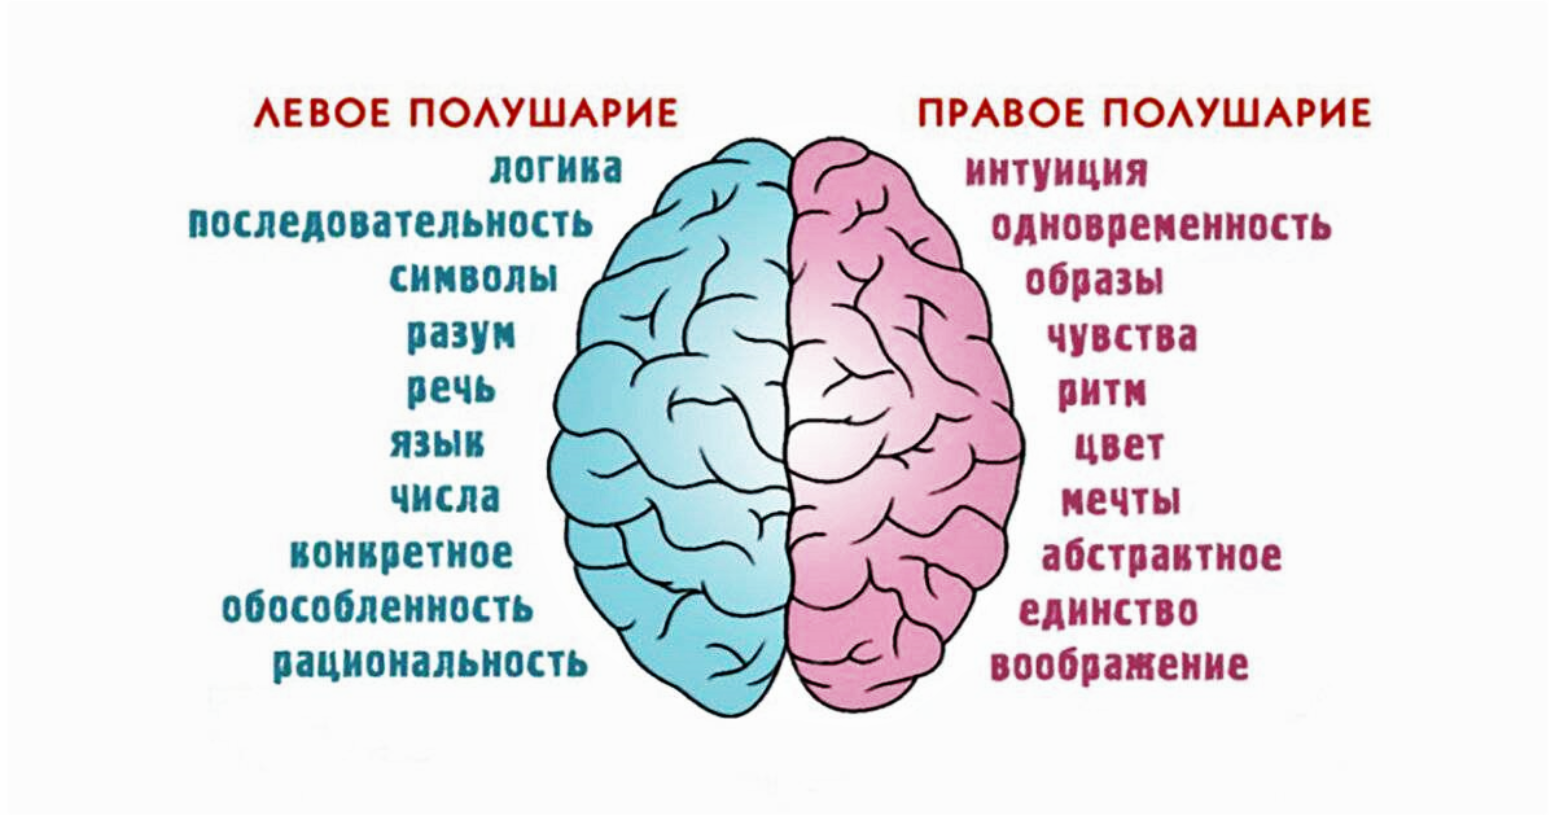 Что находится в полушариях мозга. Полушария мозга девое т правое. За что отвечает правое полушарие. За что отвечают полушария головного мозга человека левое и правое. За какие процессы головного мозга отвечает правое полушарие.